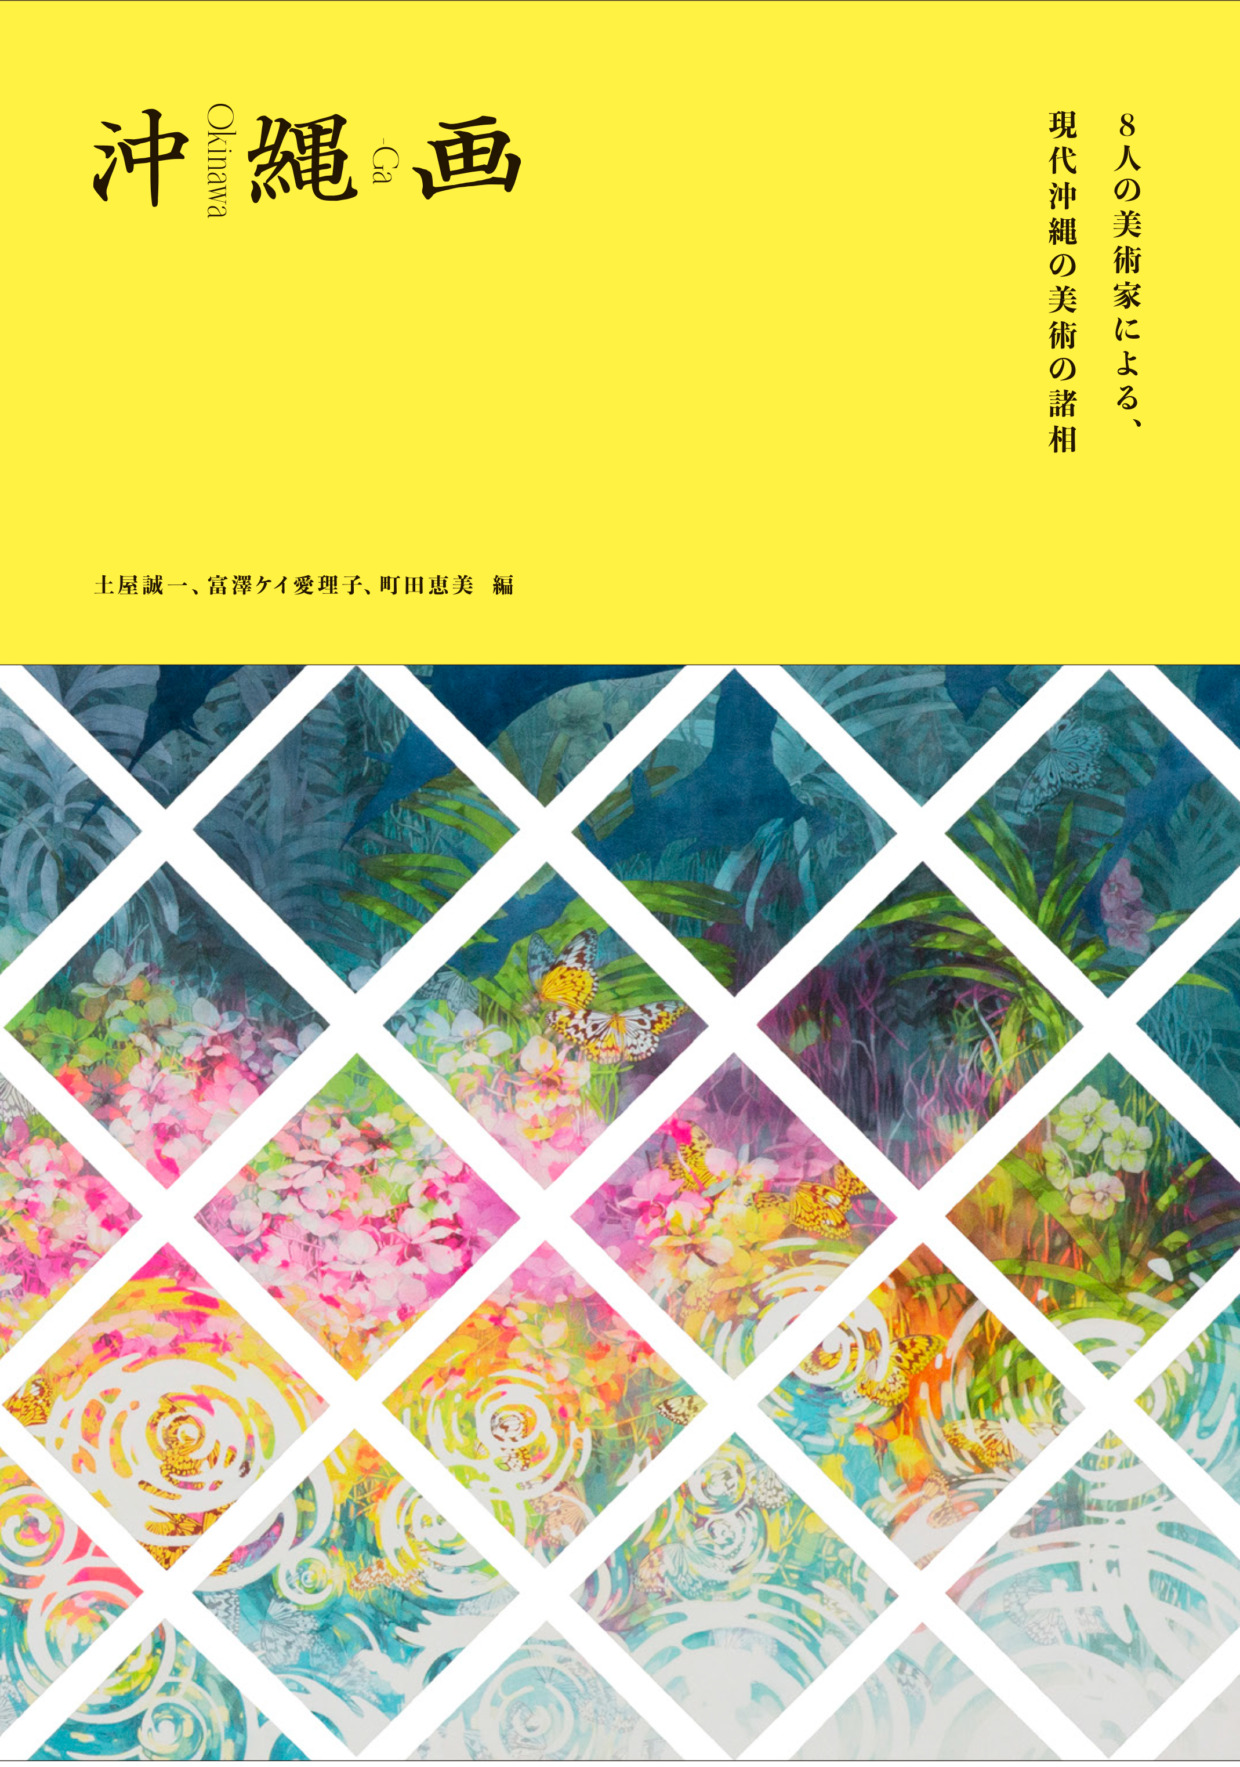 『沖縄画―8人の美術家による、現代沖縄の美術の諸相』